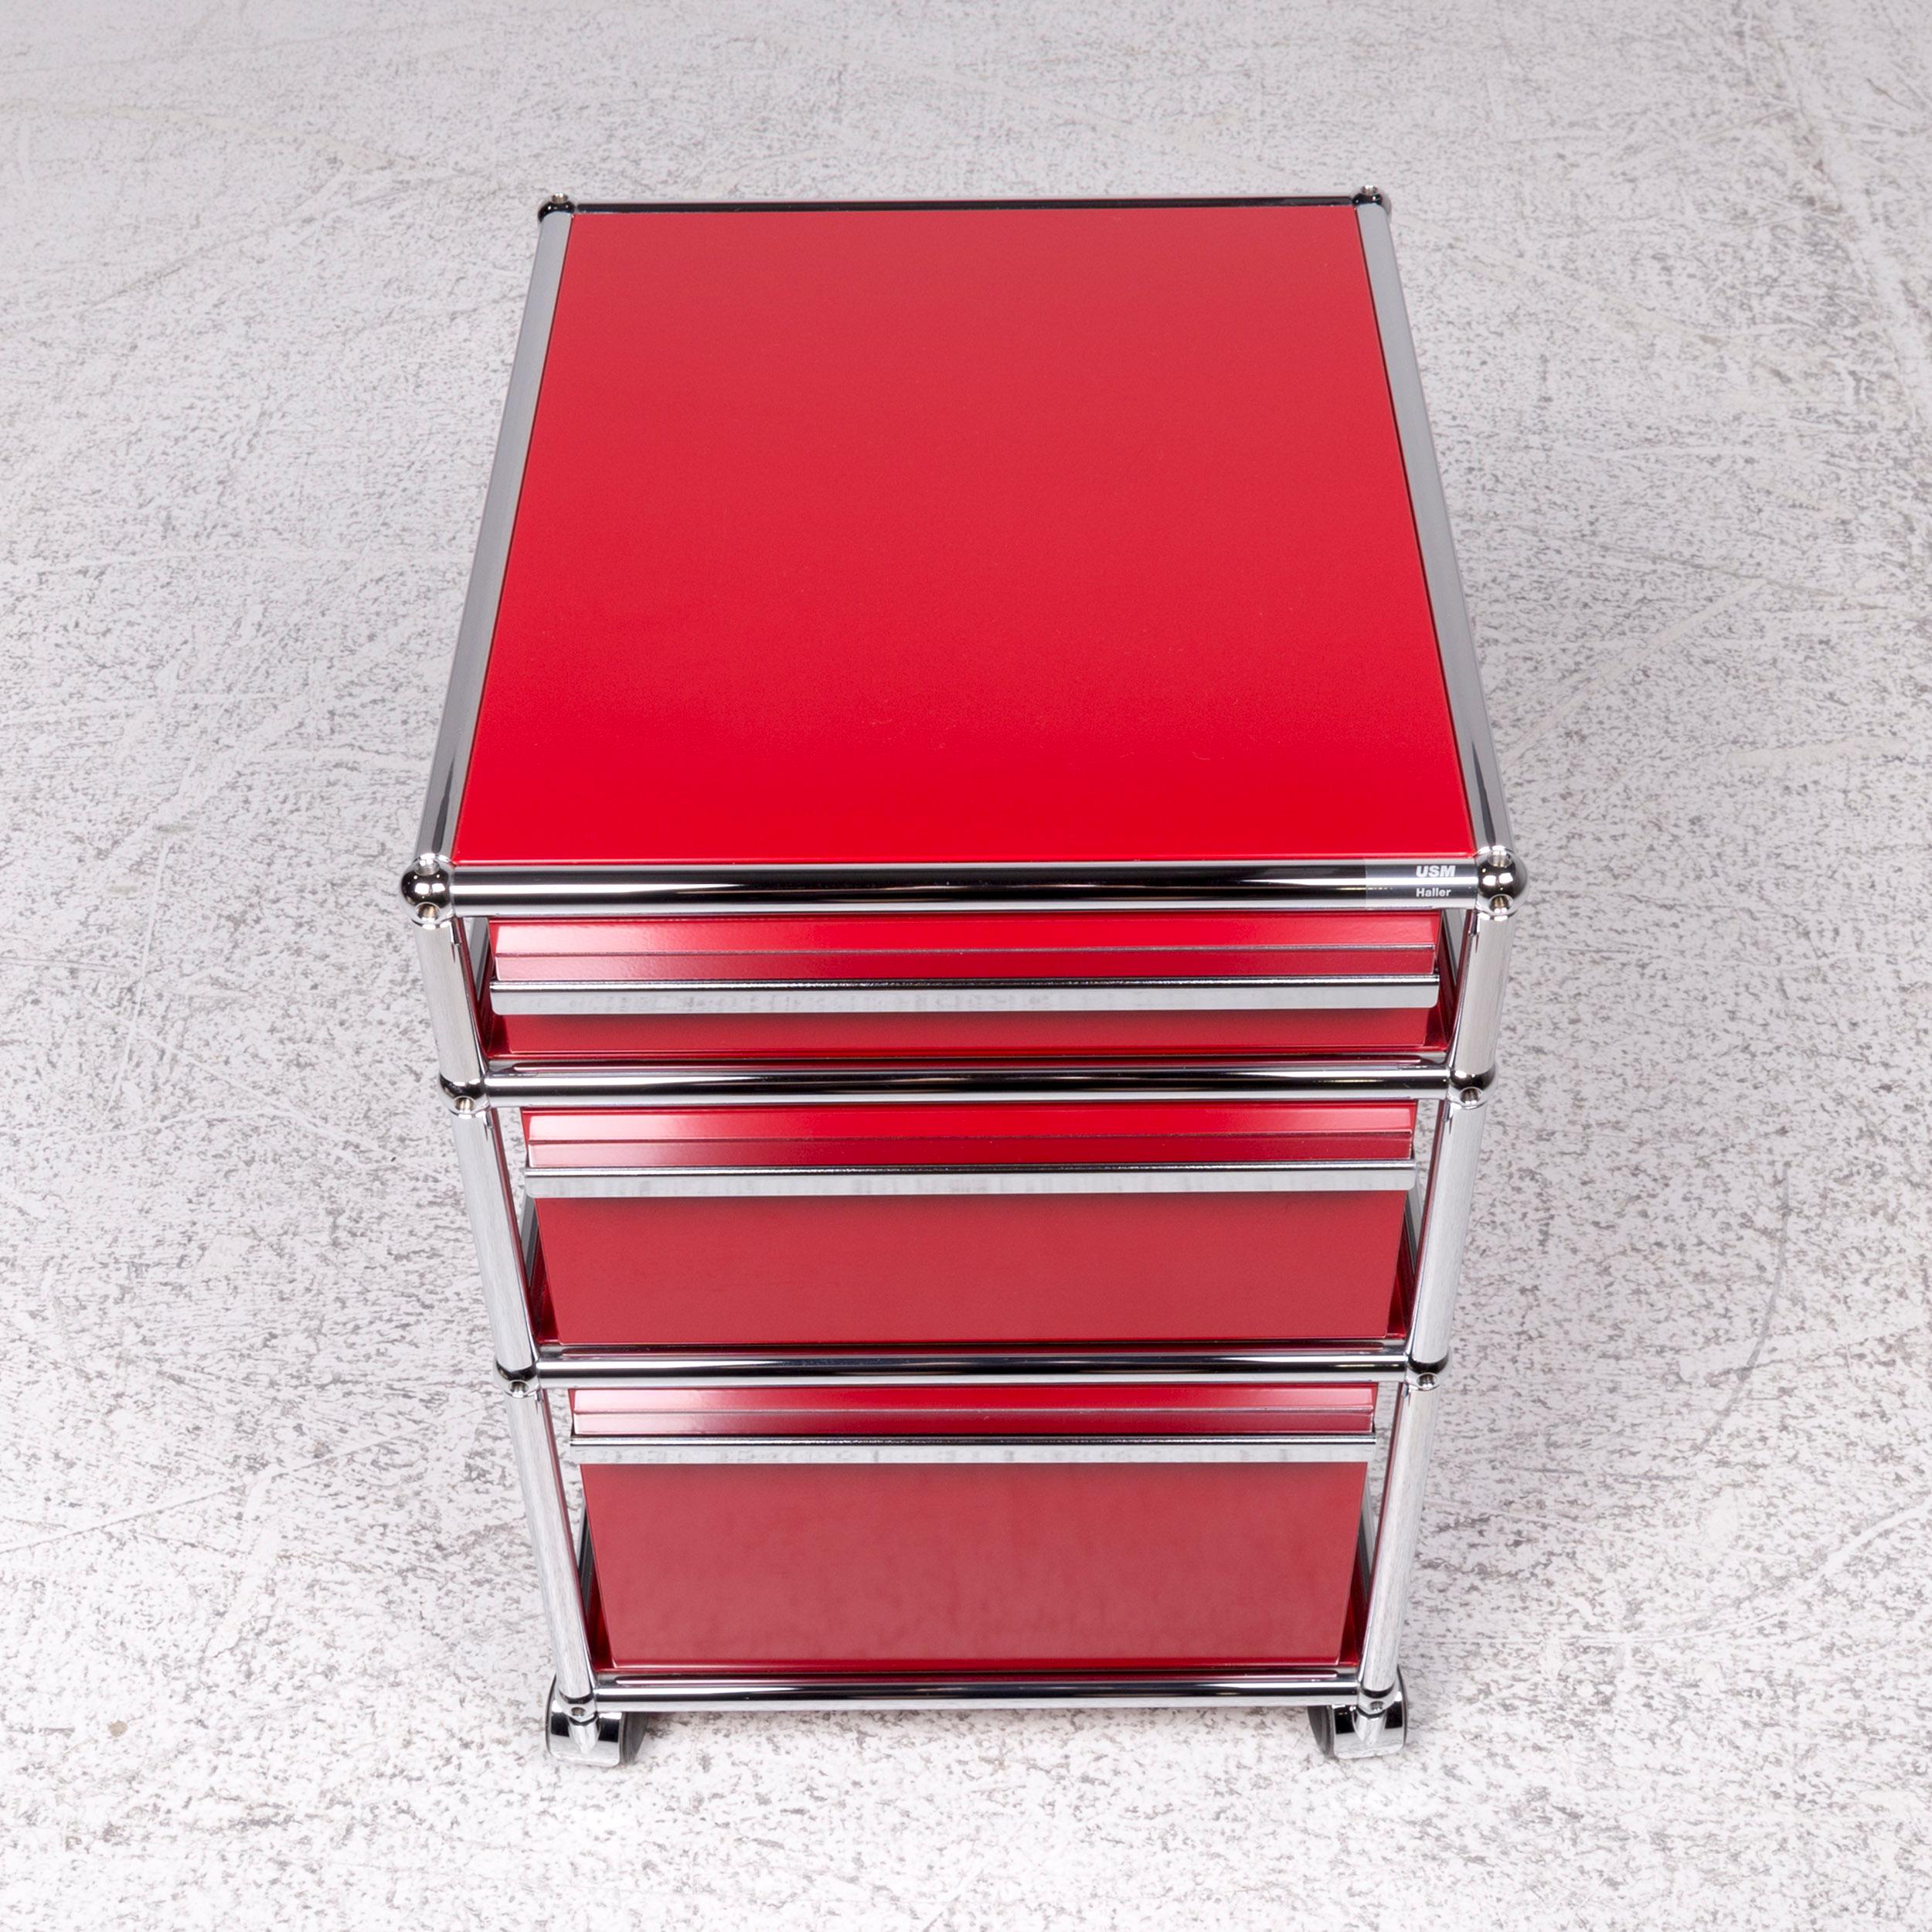 USM Haller Metal Shelf Sideboard Rollcontainer Set 3 Drawers Red 2